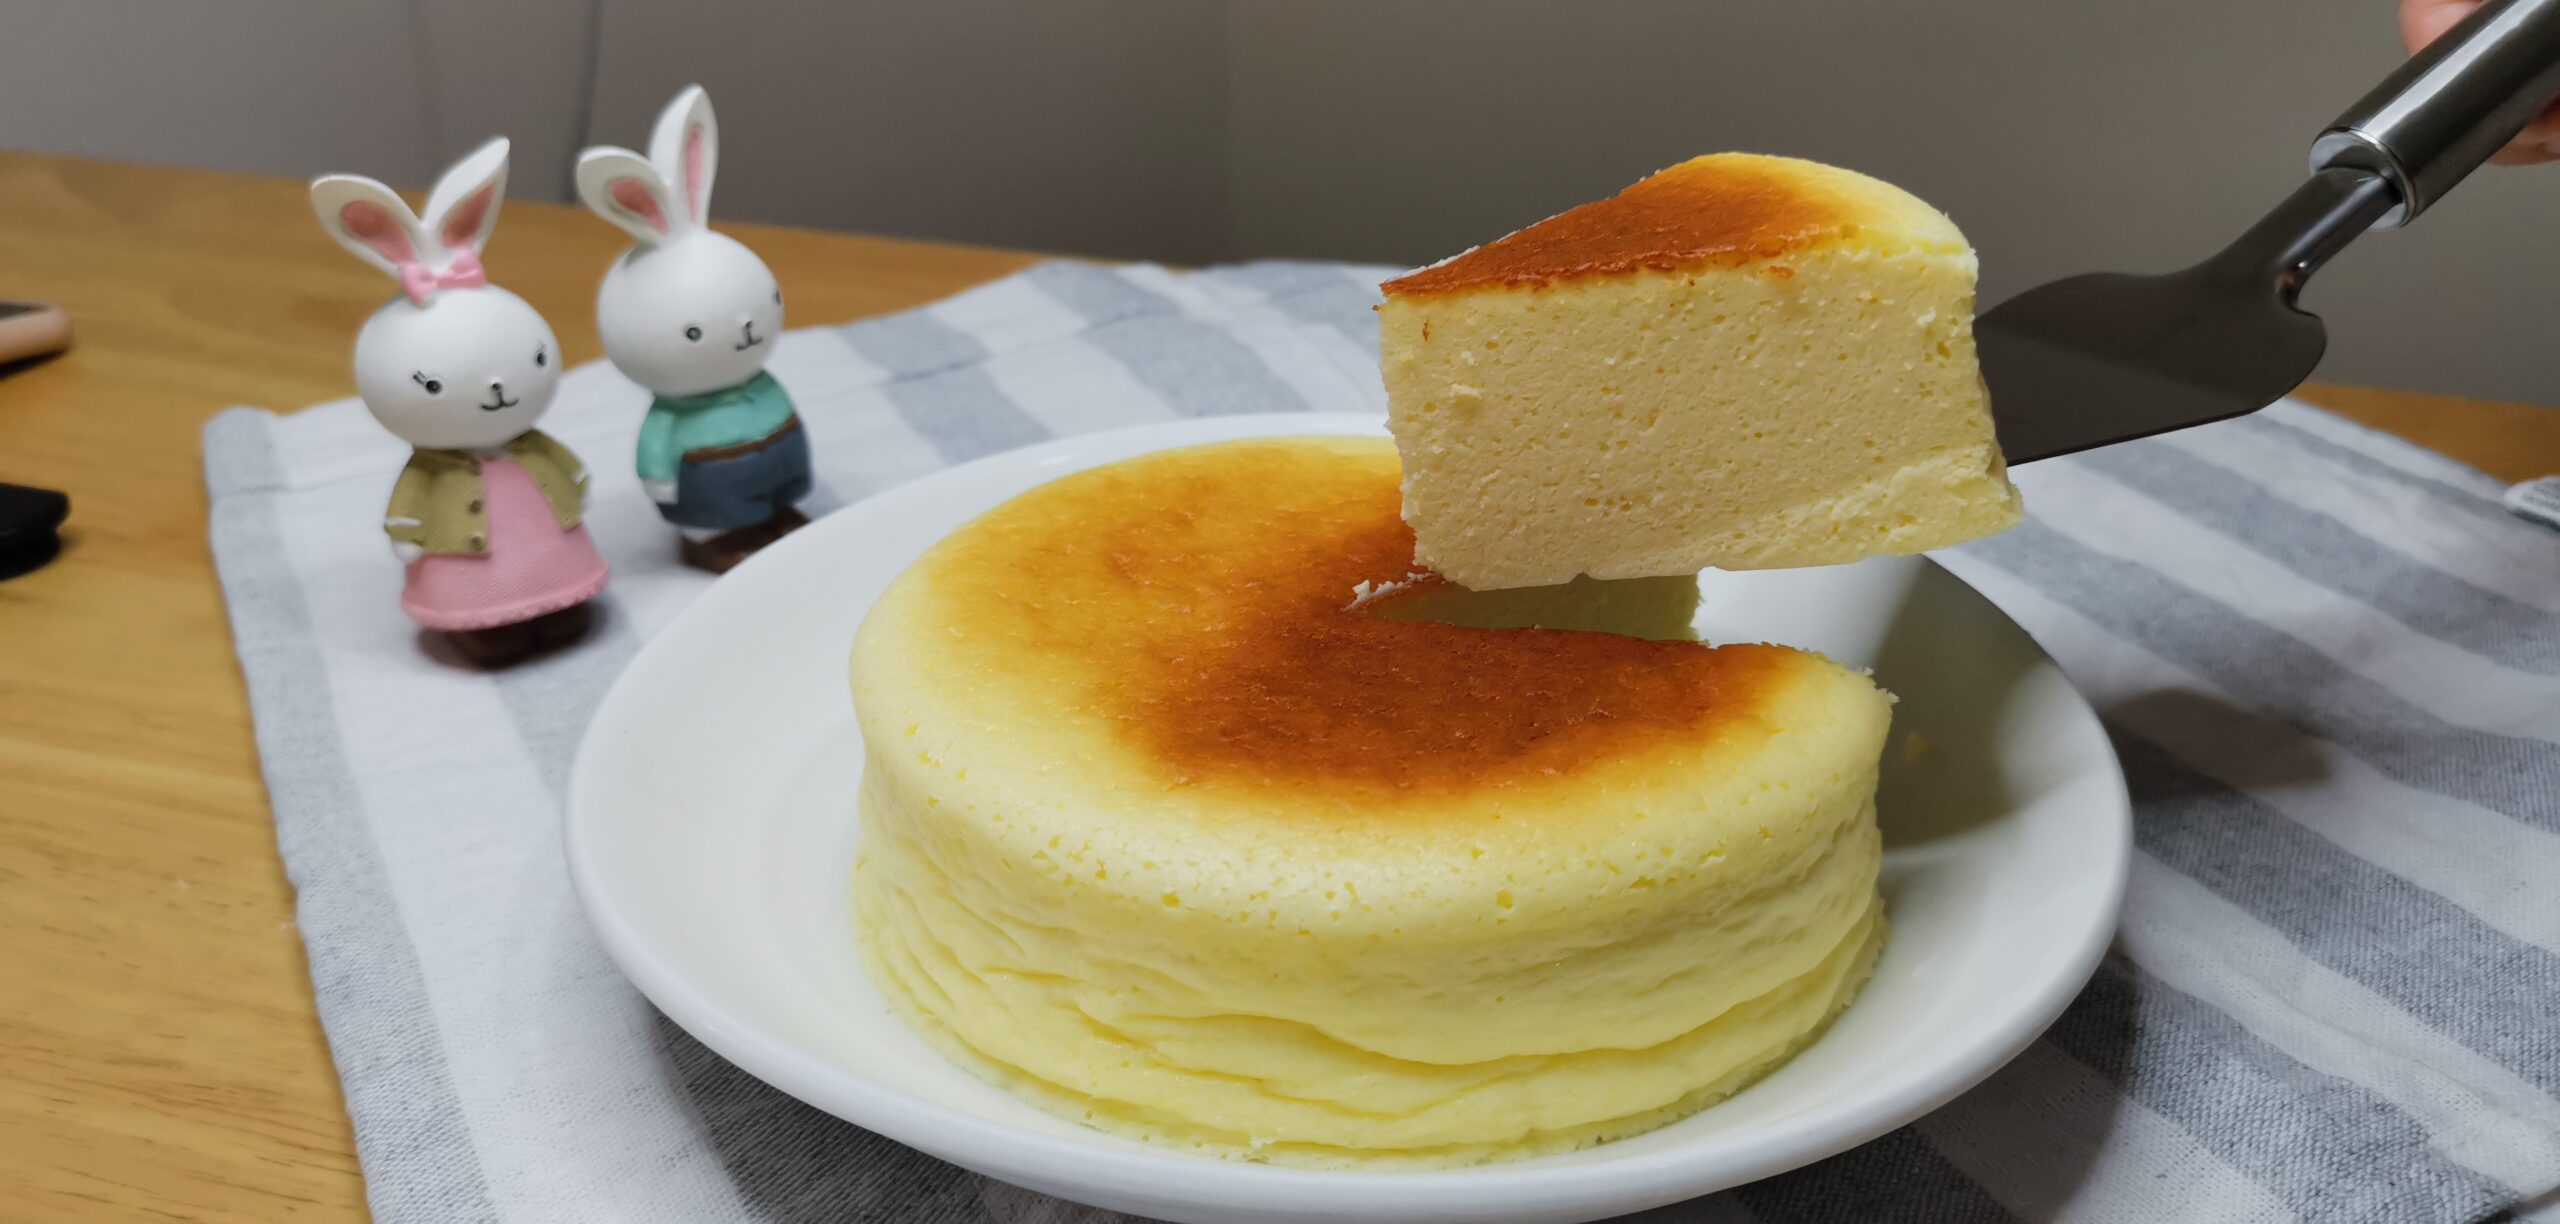 日式舒芙蕾芝士蛋糕怎么做_日式舒芙蕾芝士蛋糕的做法_豆果美食